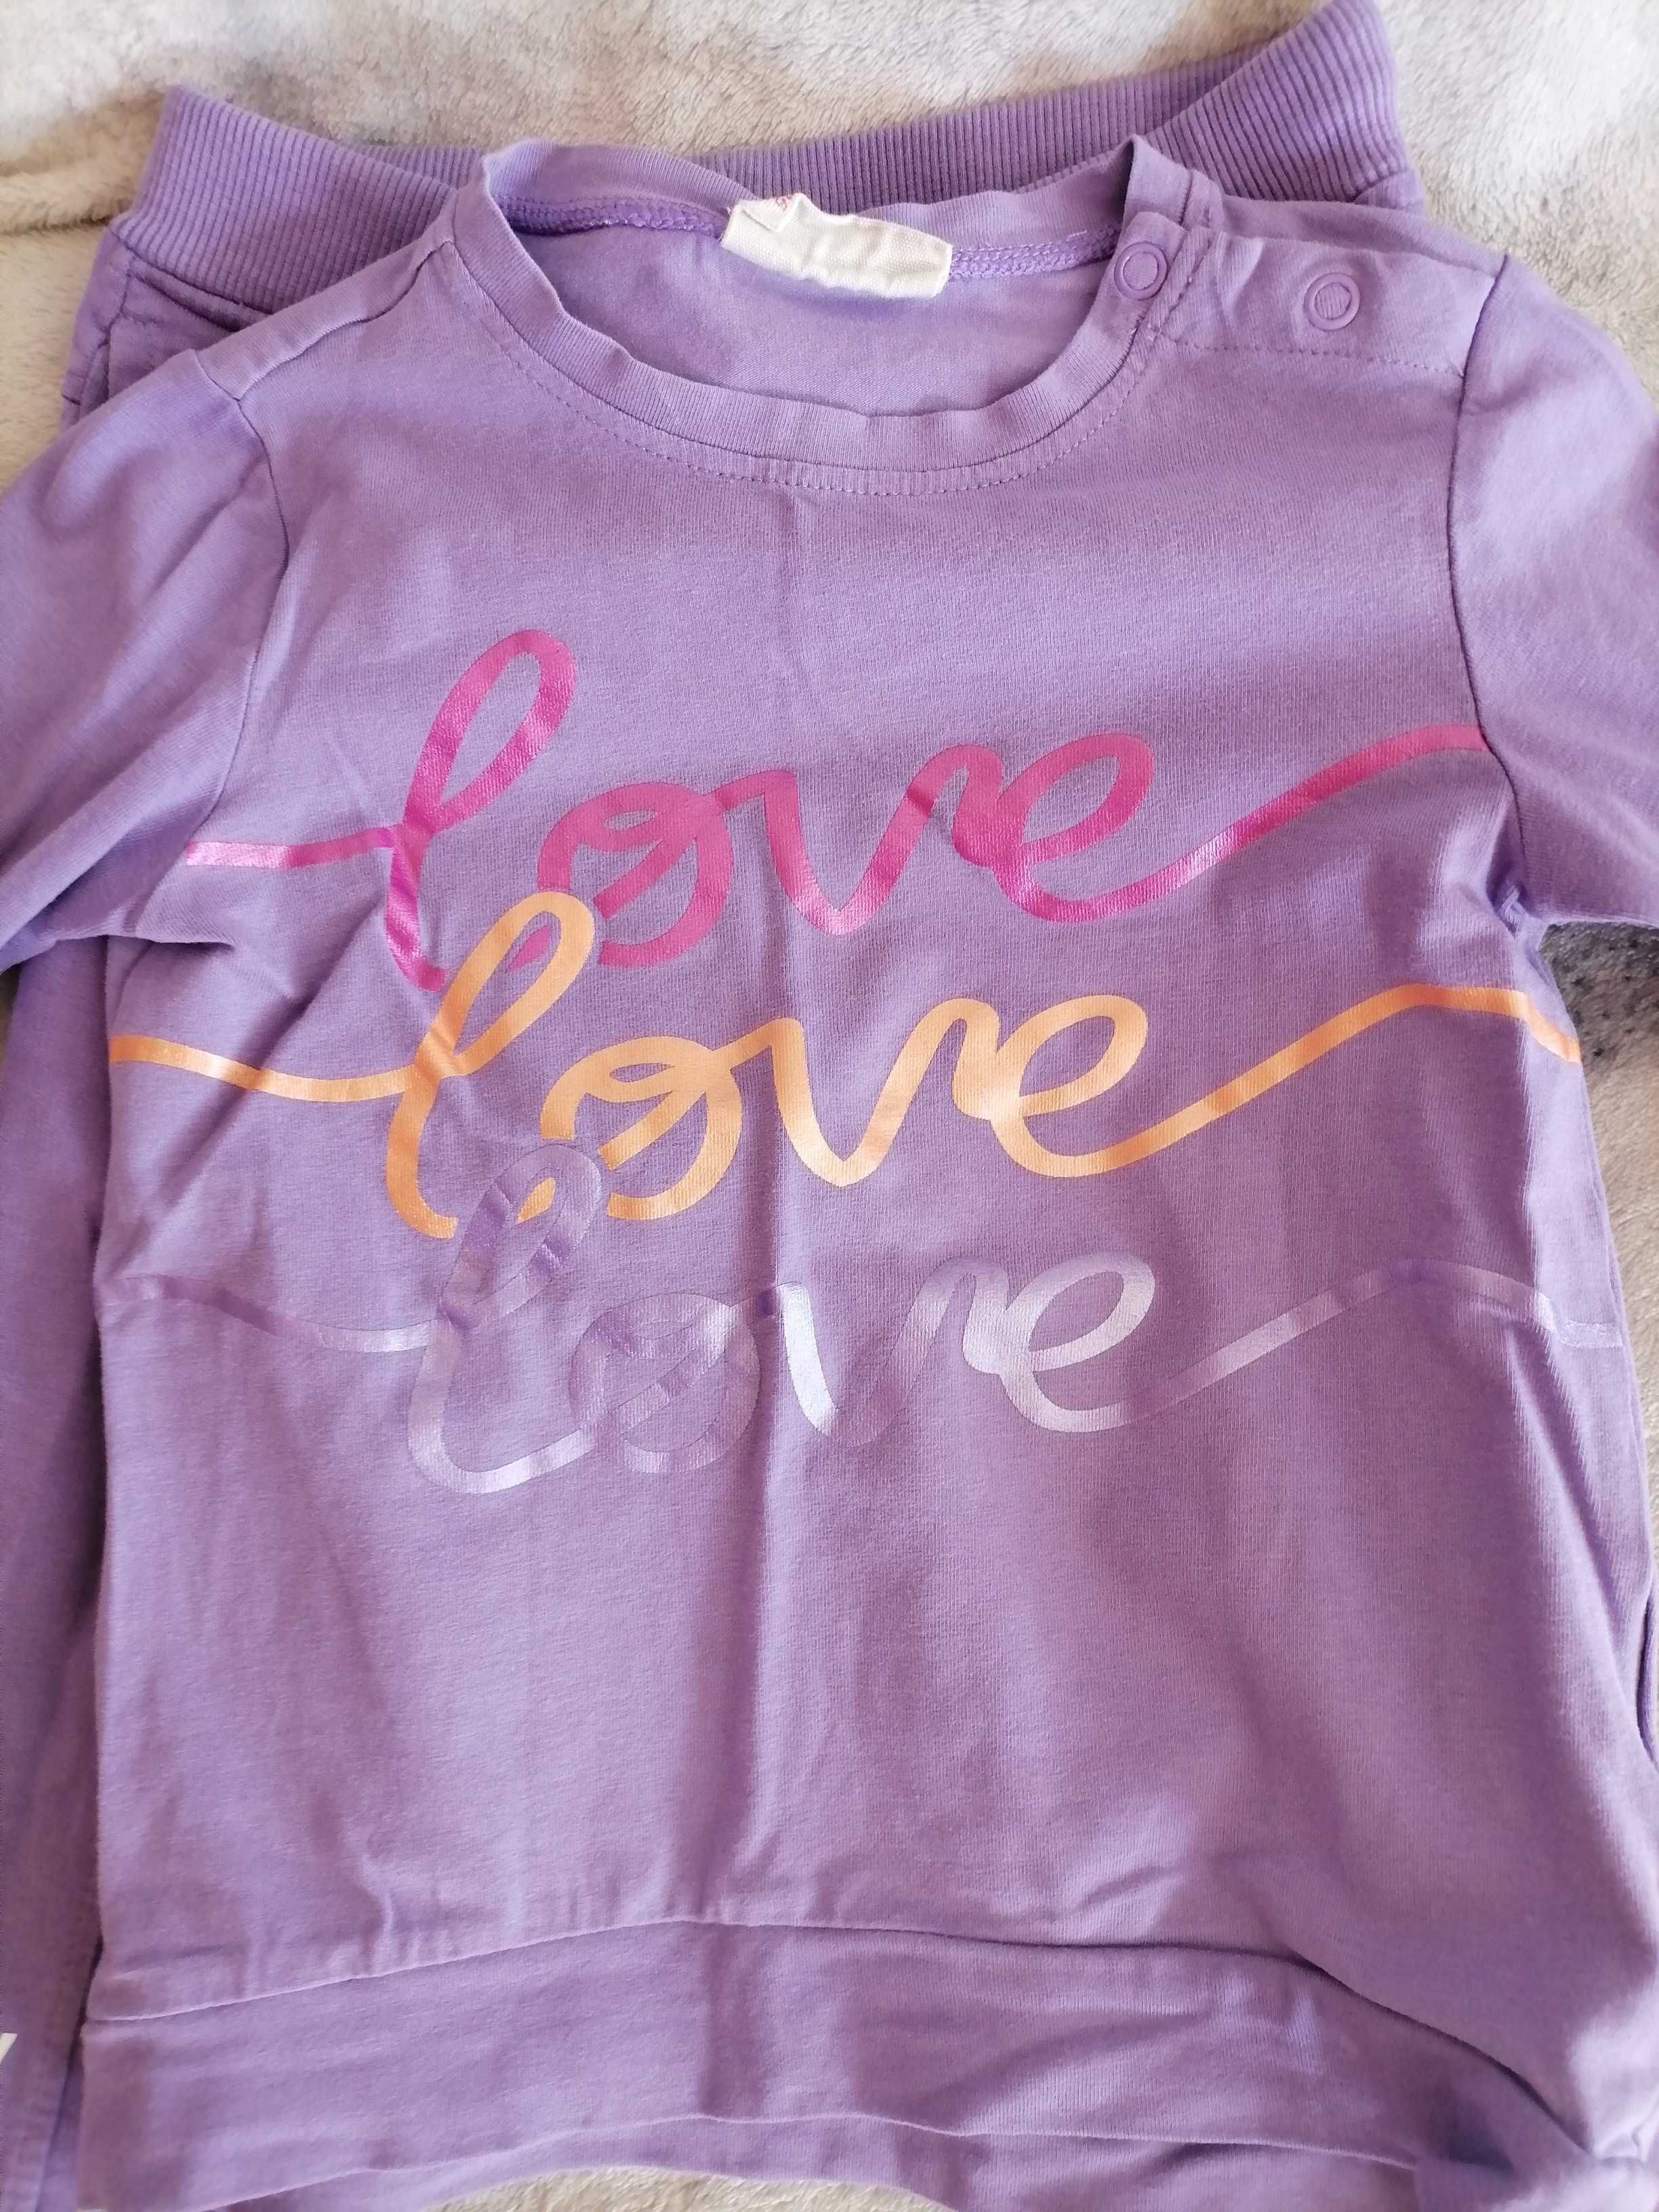 Komplet dziewczęcy Coccodrillo dres napis "love" fiolet 98 st. idealny